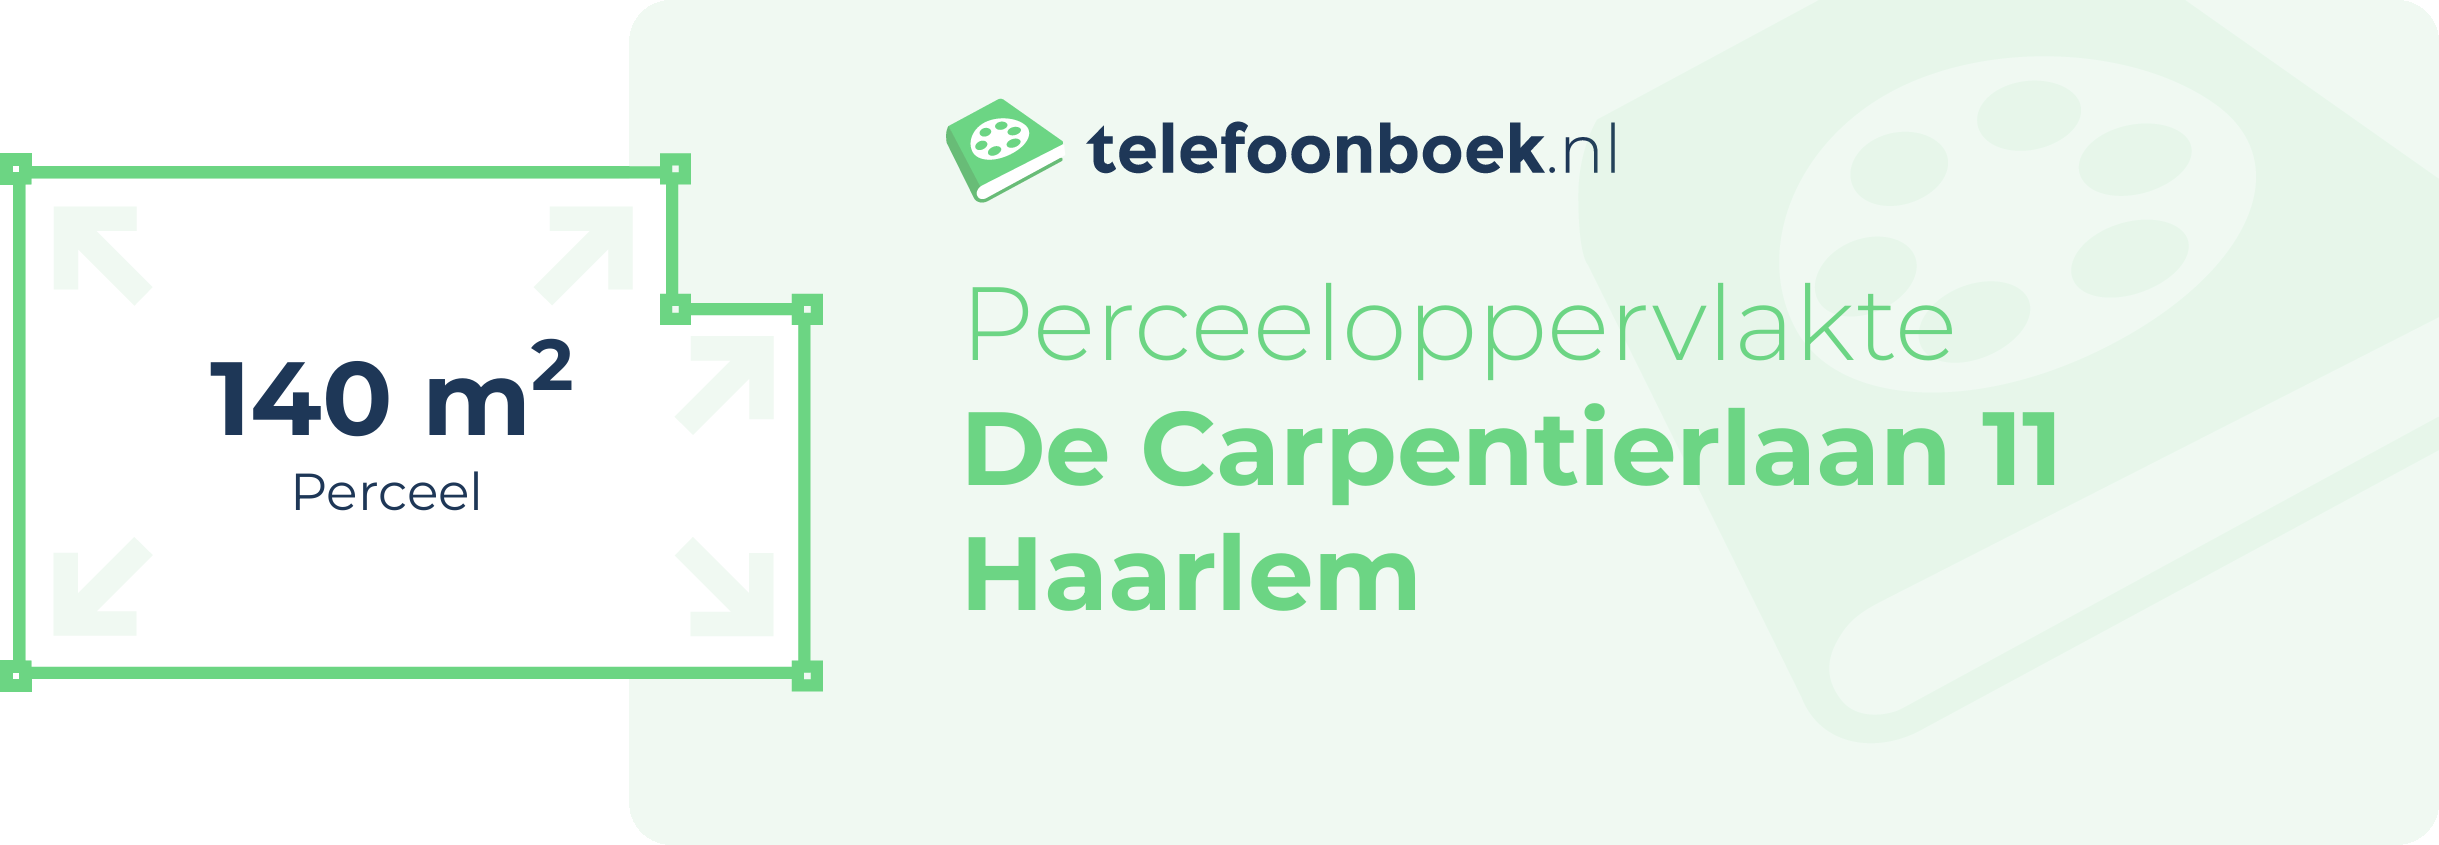 Perceeloppervlakte De Carpentierlaan 11 Haarlem